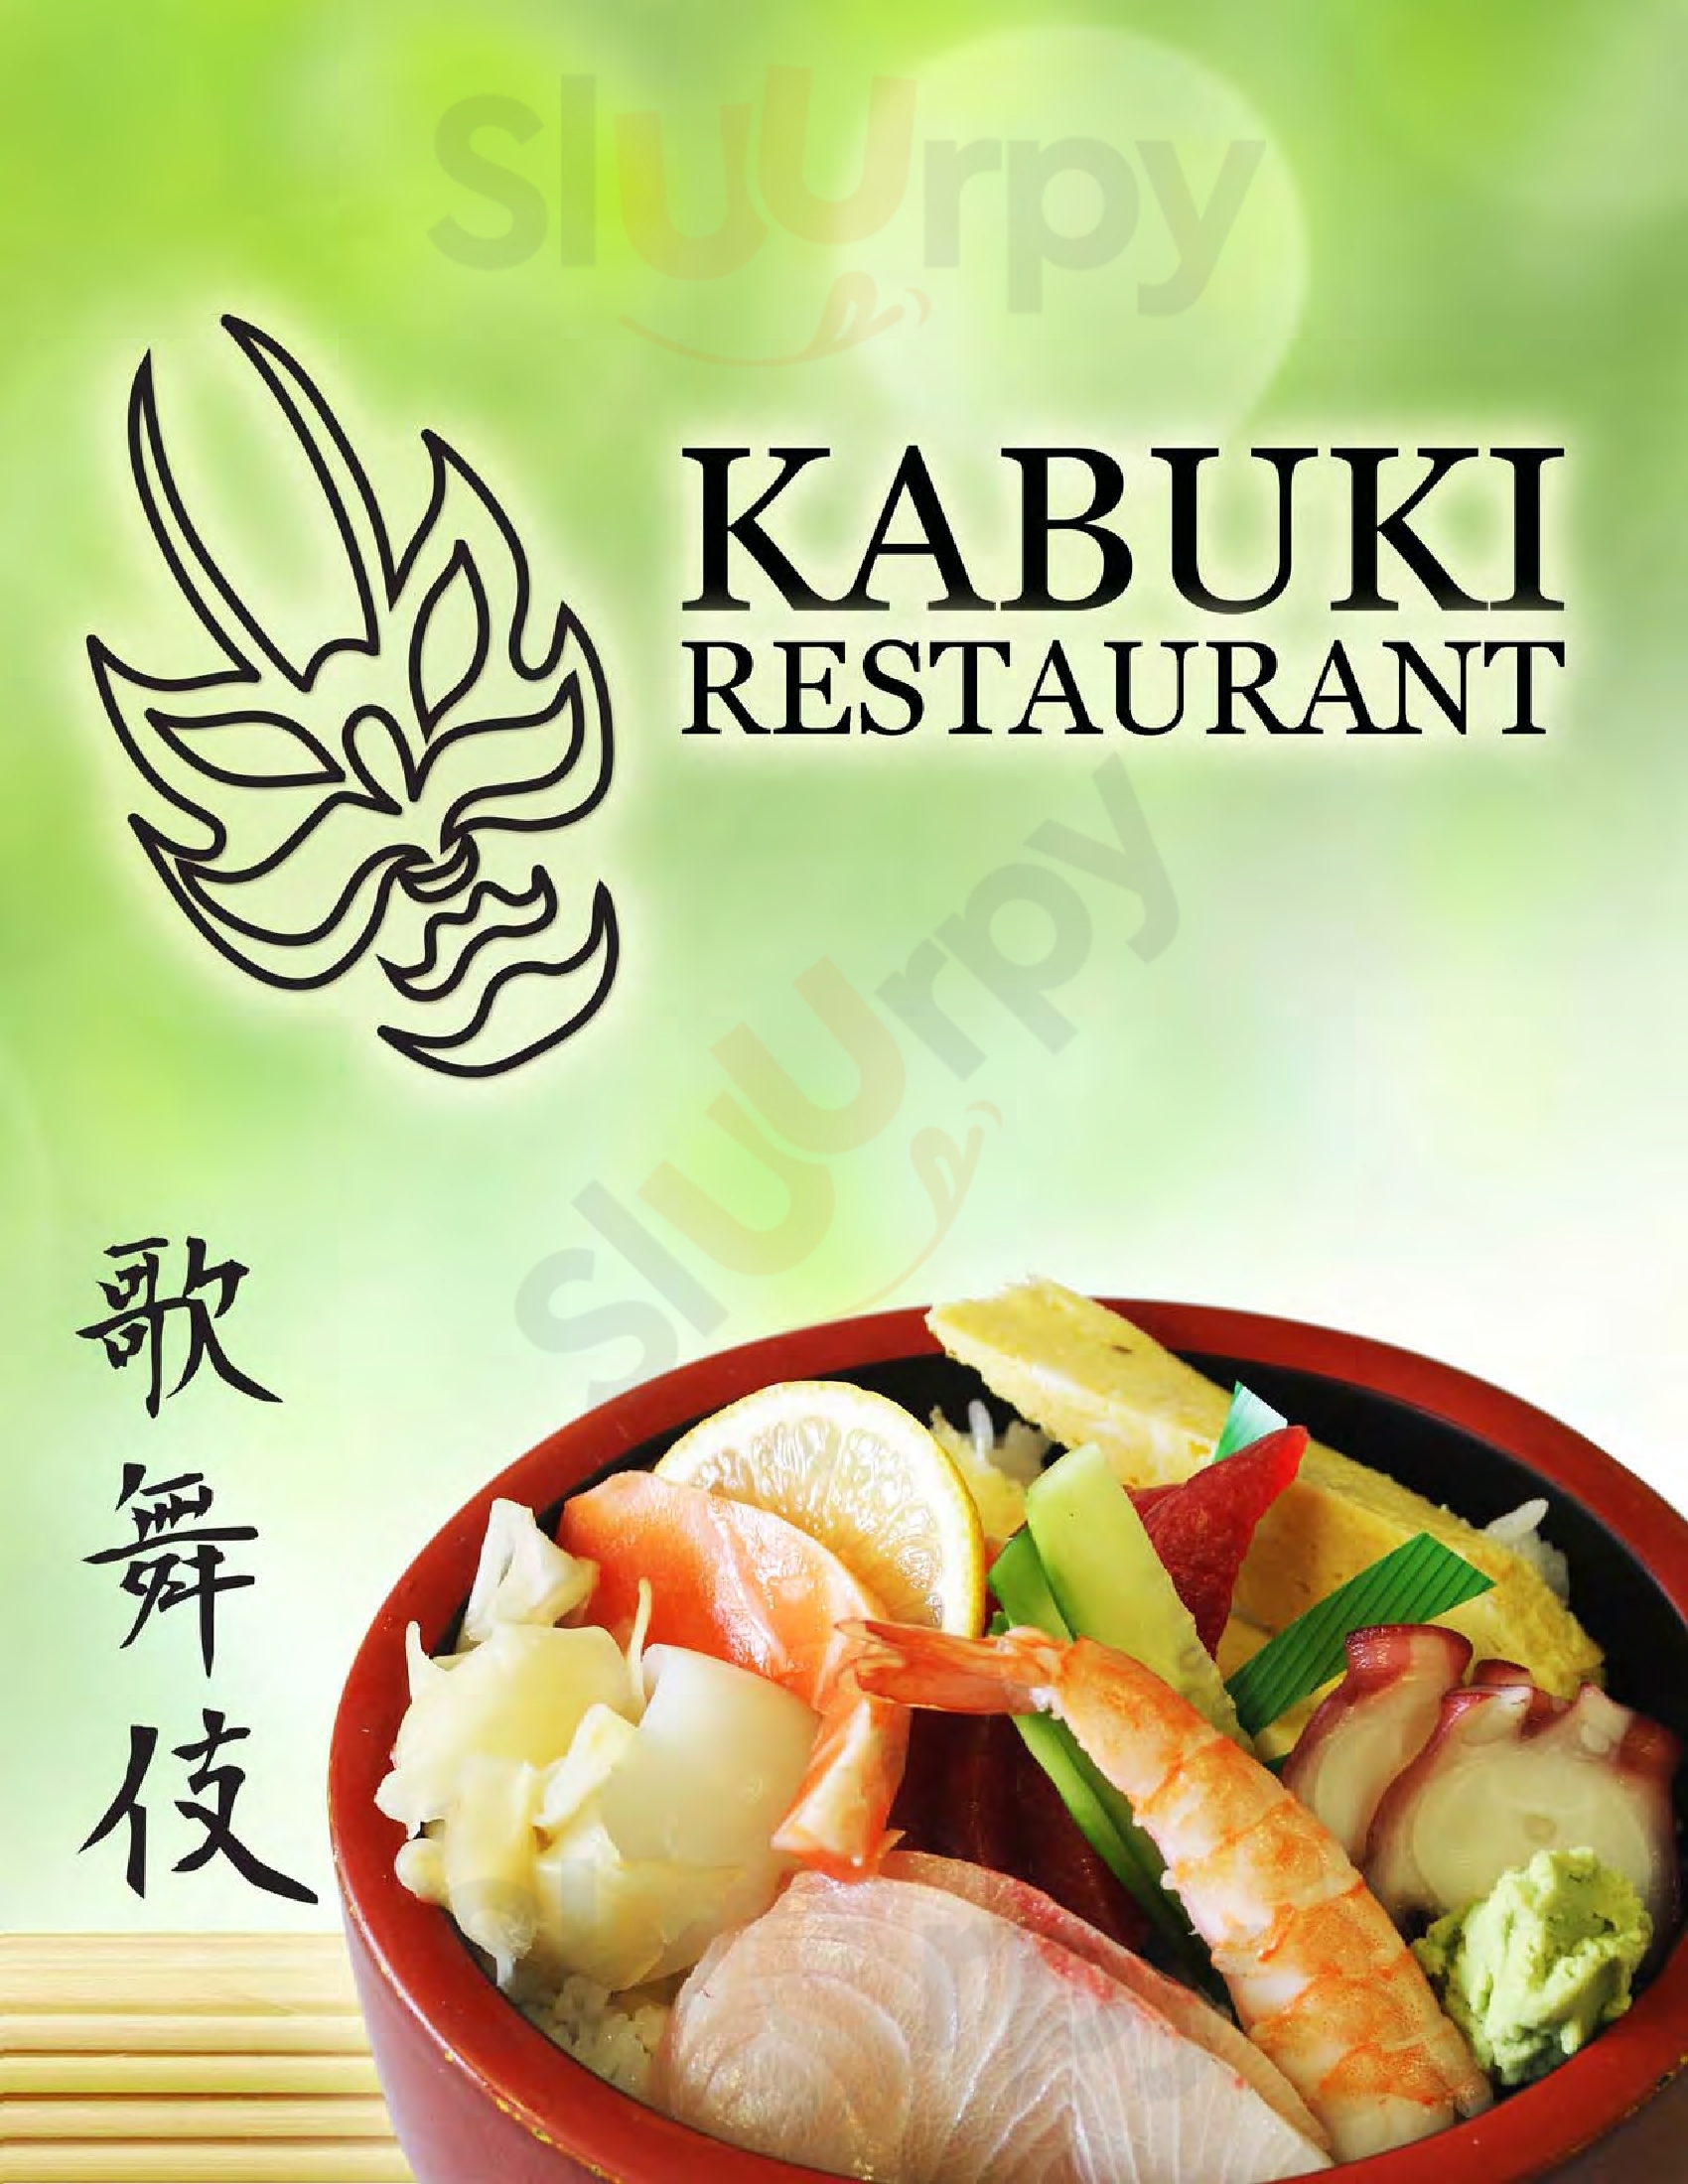 Kabuki Restaurant Honolulu Menu - 1